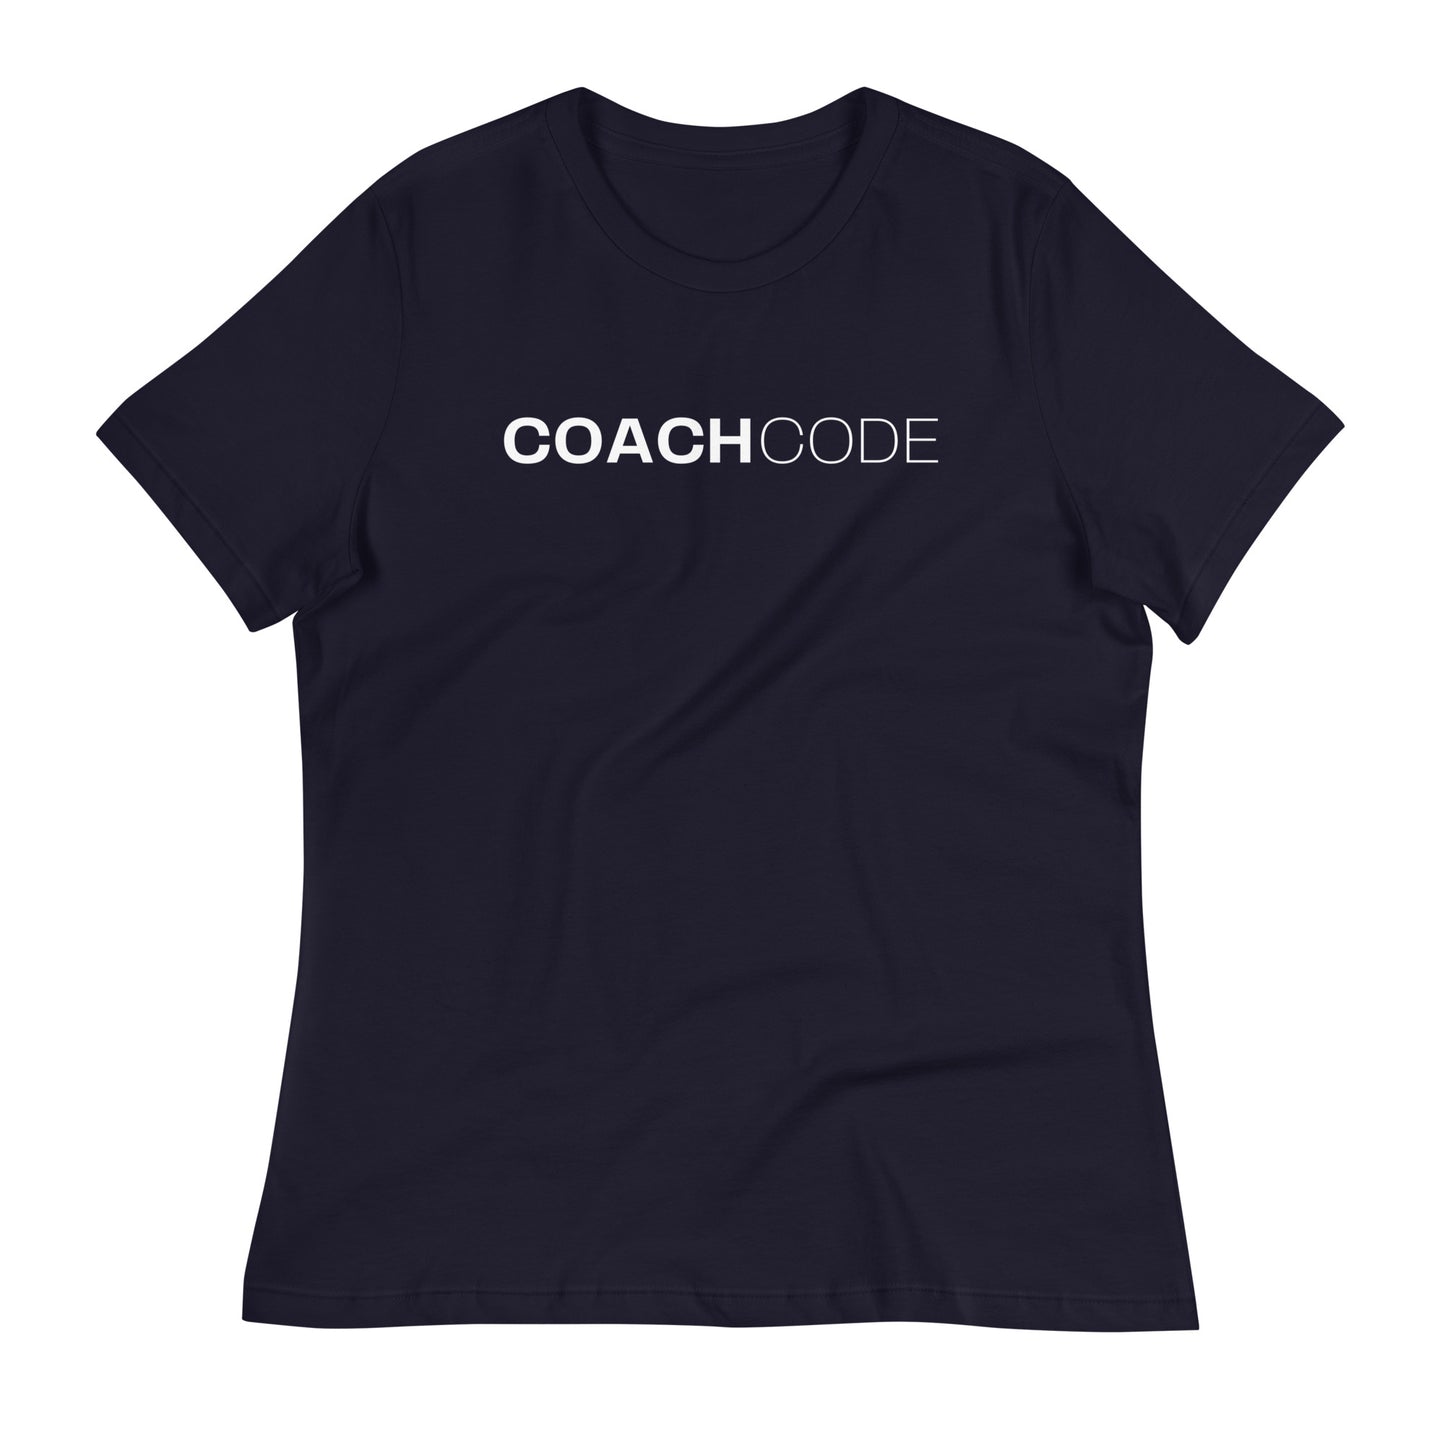 Coach Code White Logo Women's Relaxed T-Shirt